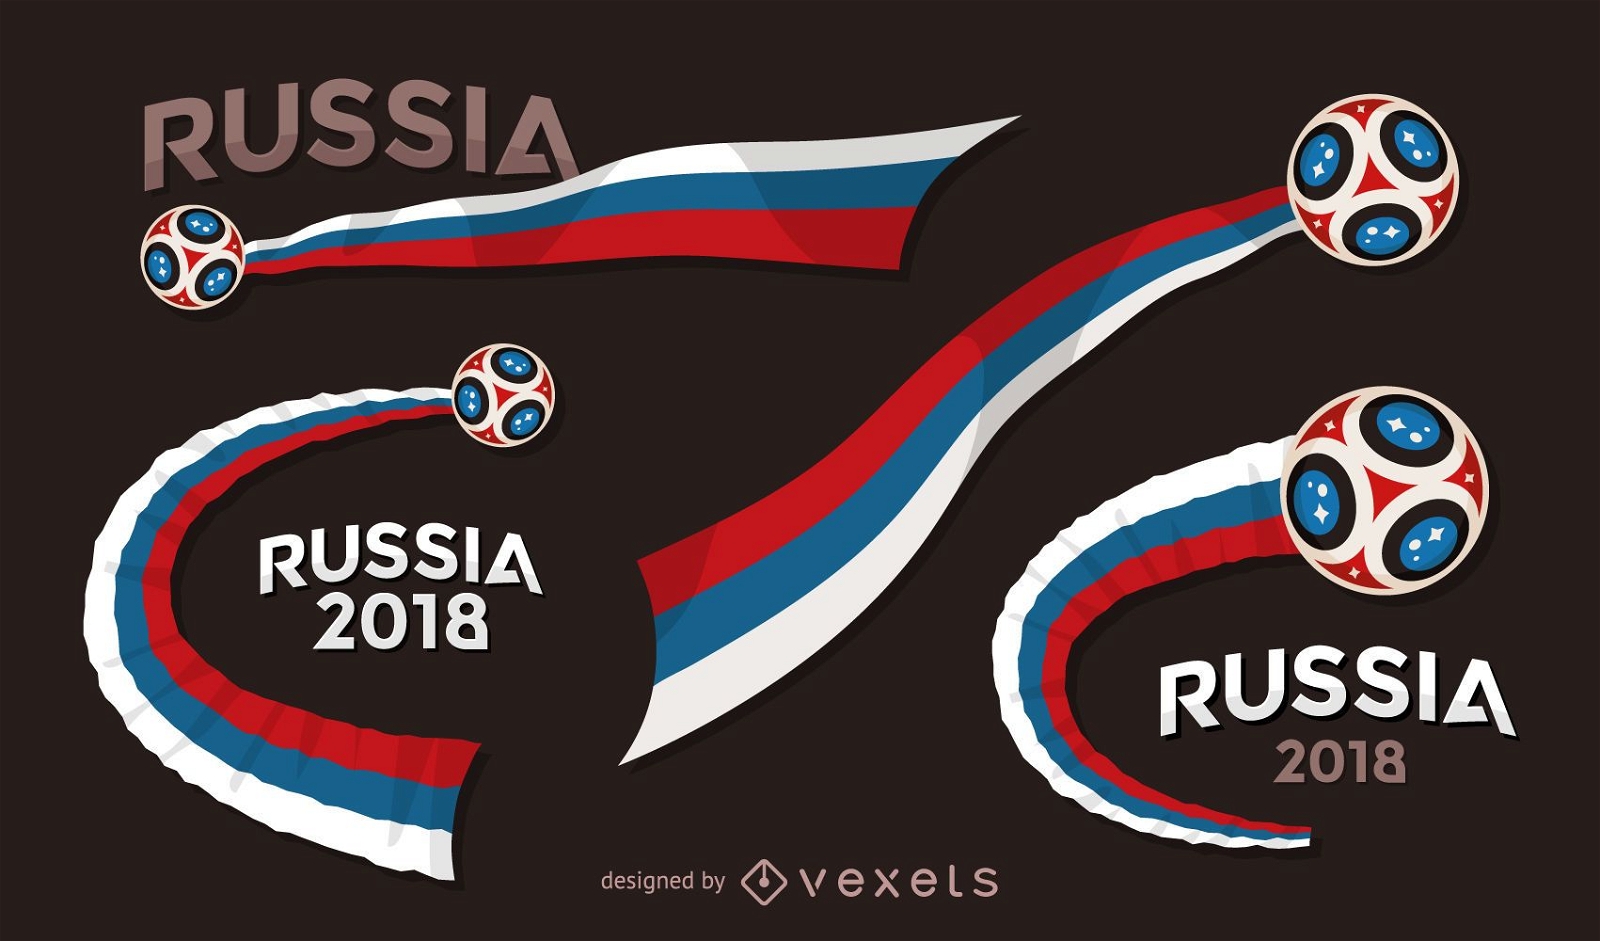 Conjunto de banners de la Copa del mundo de Rusia 2018